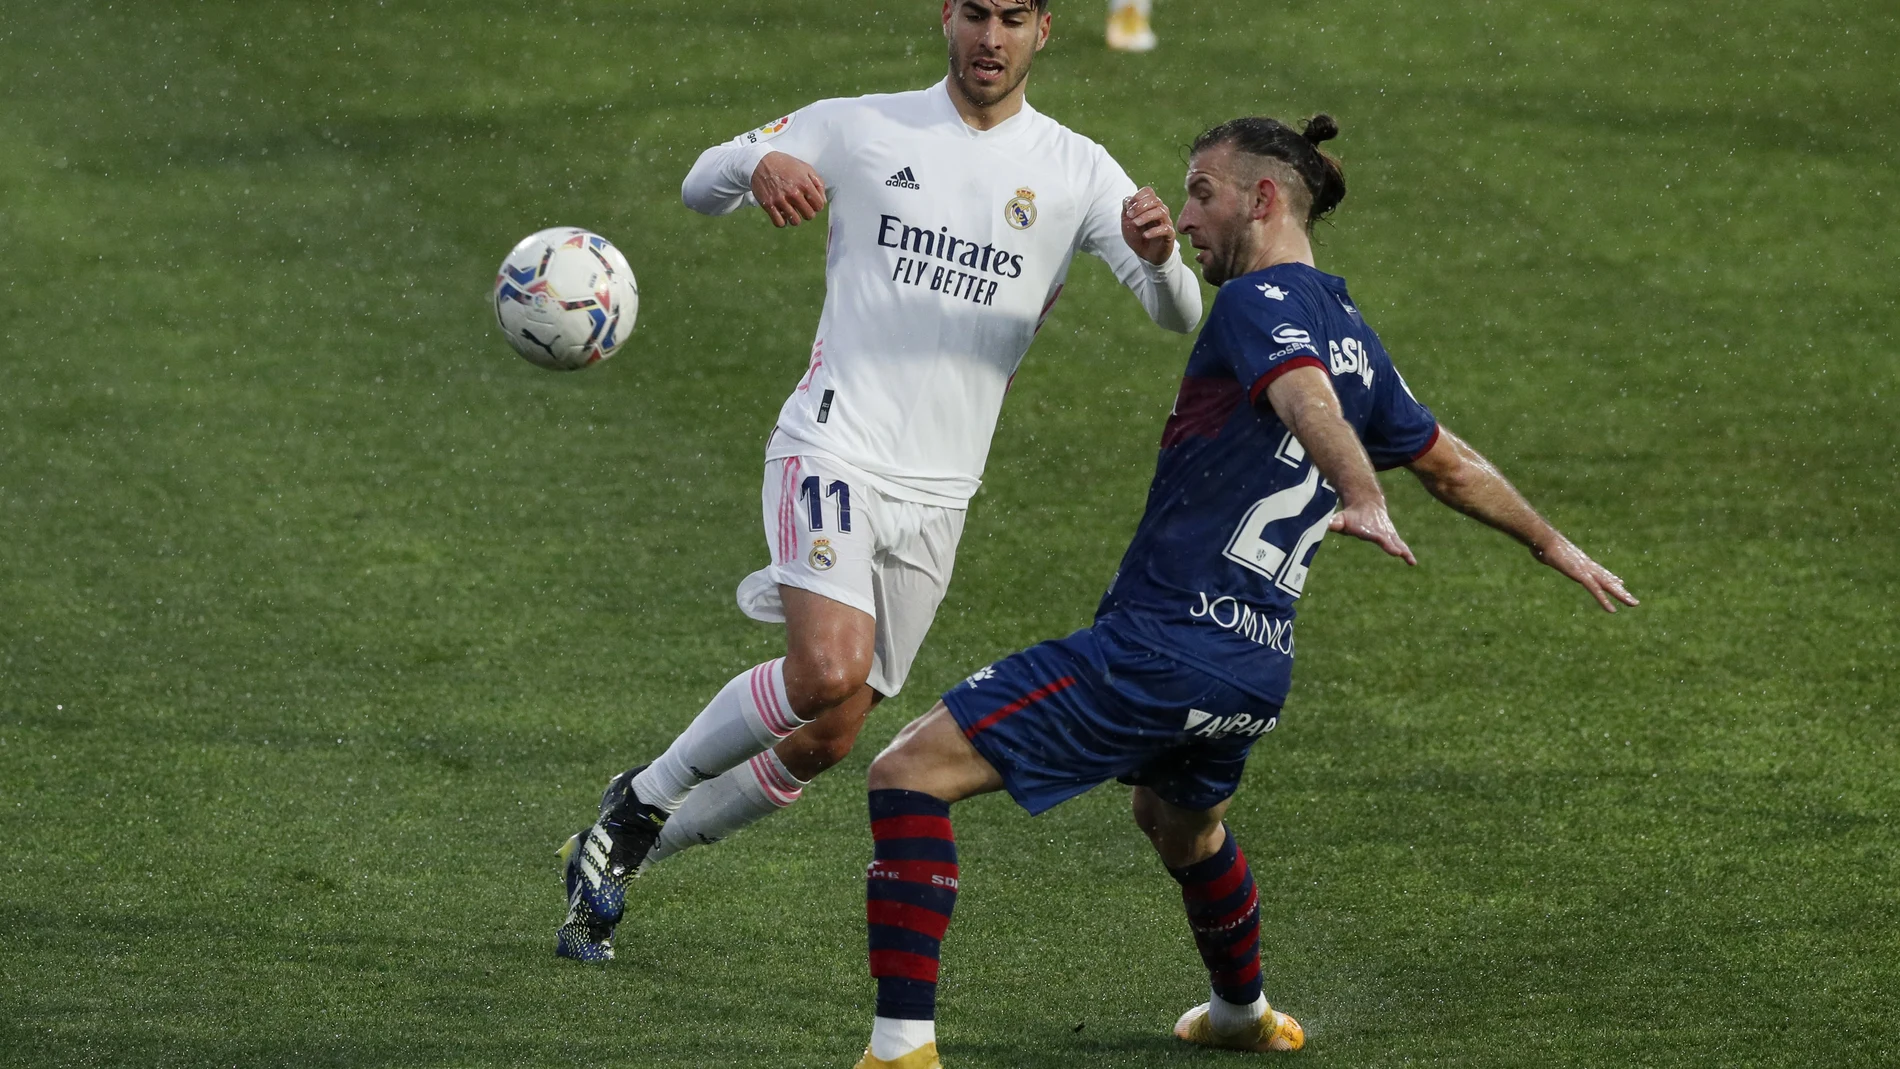 Marco Asensio contra Gaston Silva en el Huesca-Real Madrid de LaLiga Santander